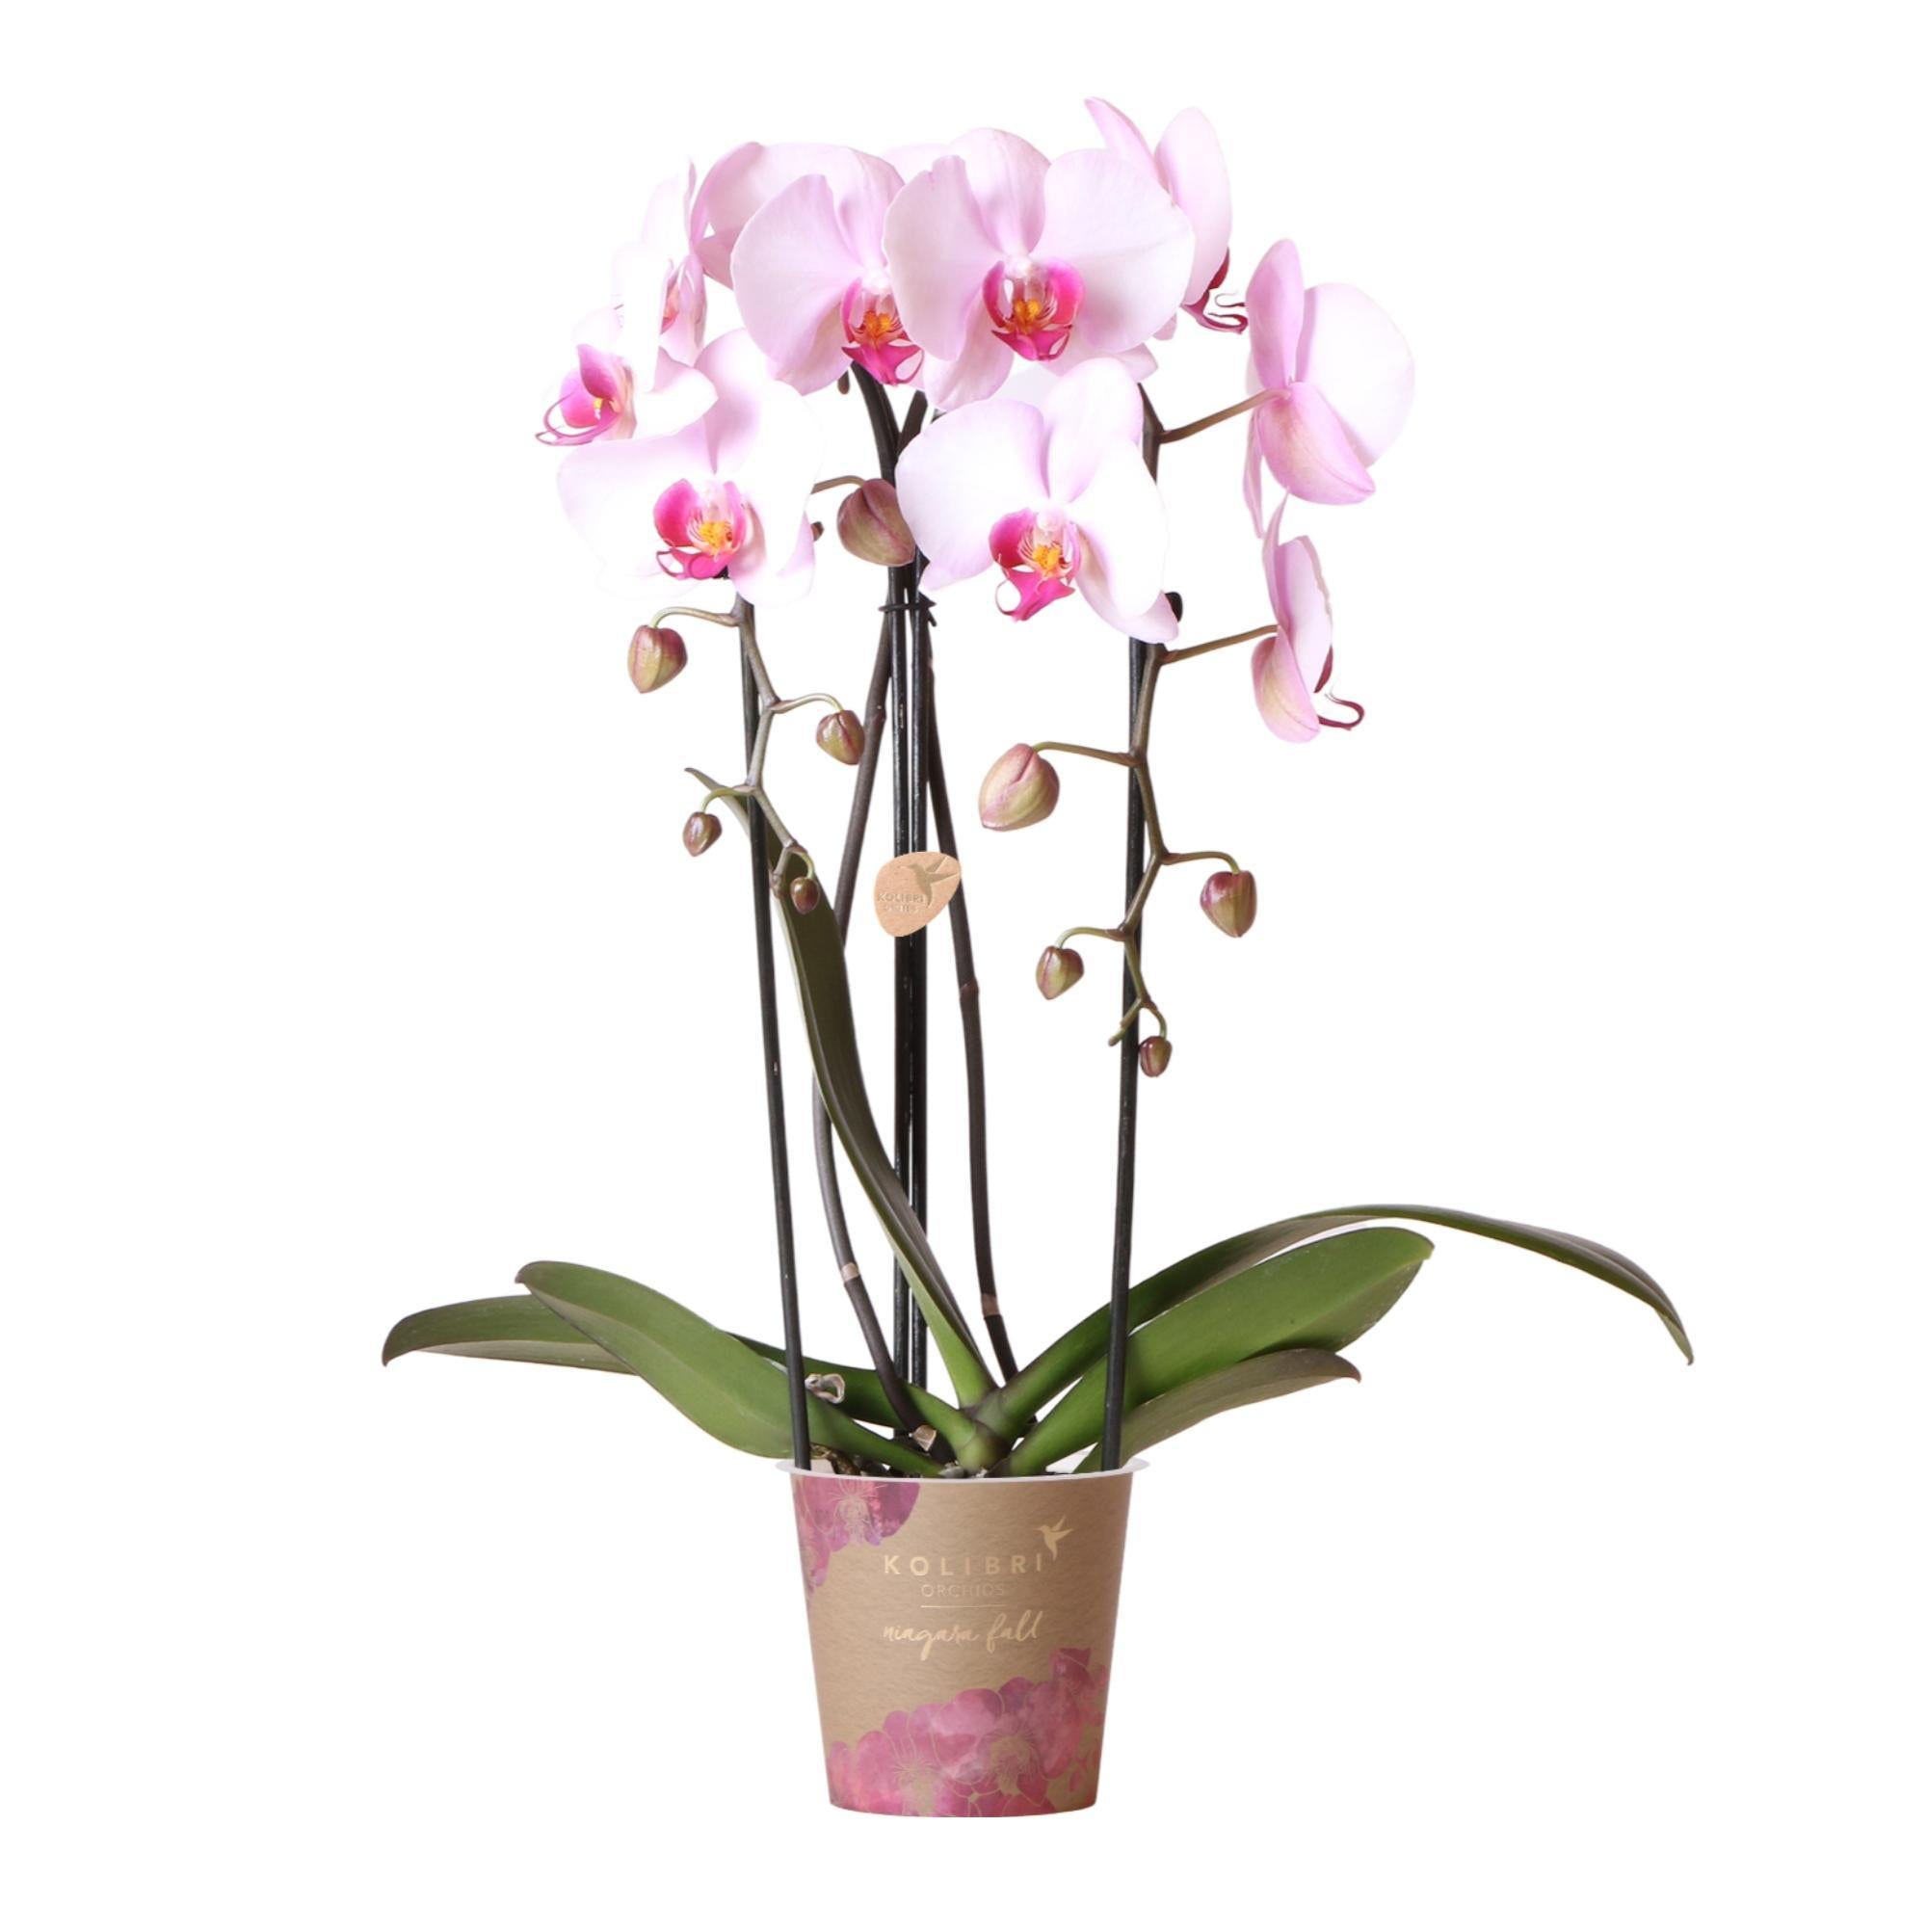 kolibriorchids Kolibri Orchids - Orchidées colibris - Orchidée Phalaenopsis rose - Chute du Niagara - taille du pot 12cm